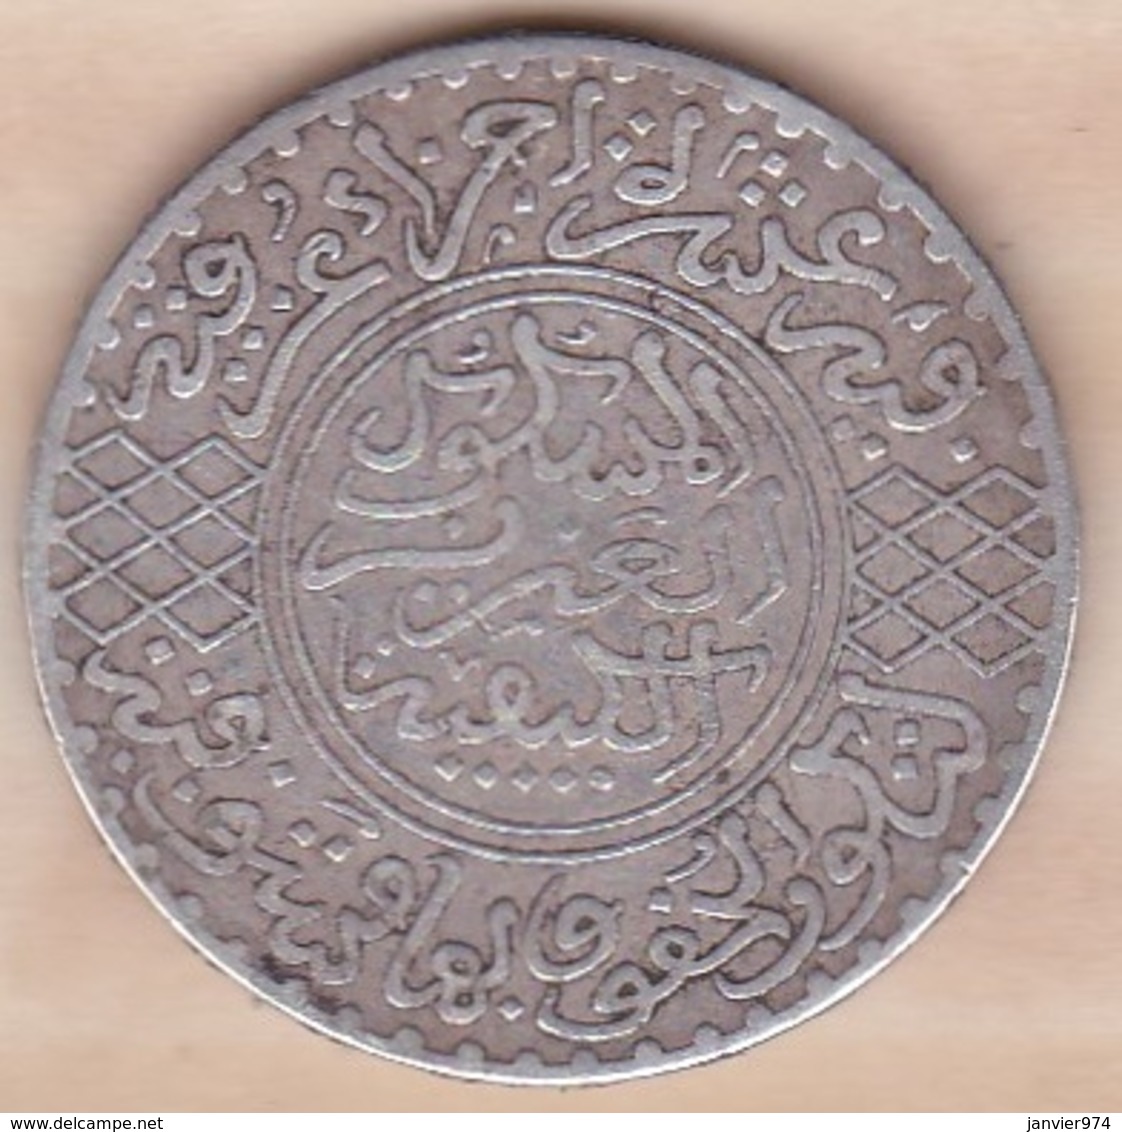 Maroc. 5 Dirhams (1/2 Rial) AH 1322 Paris. Abdul Aziz I. ARGENT - Maroc